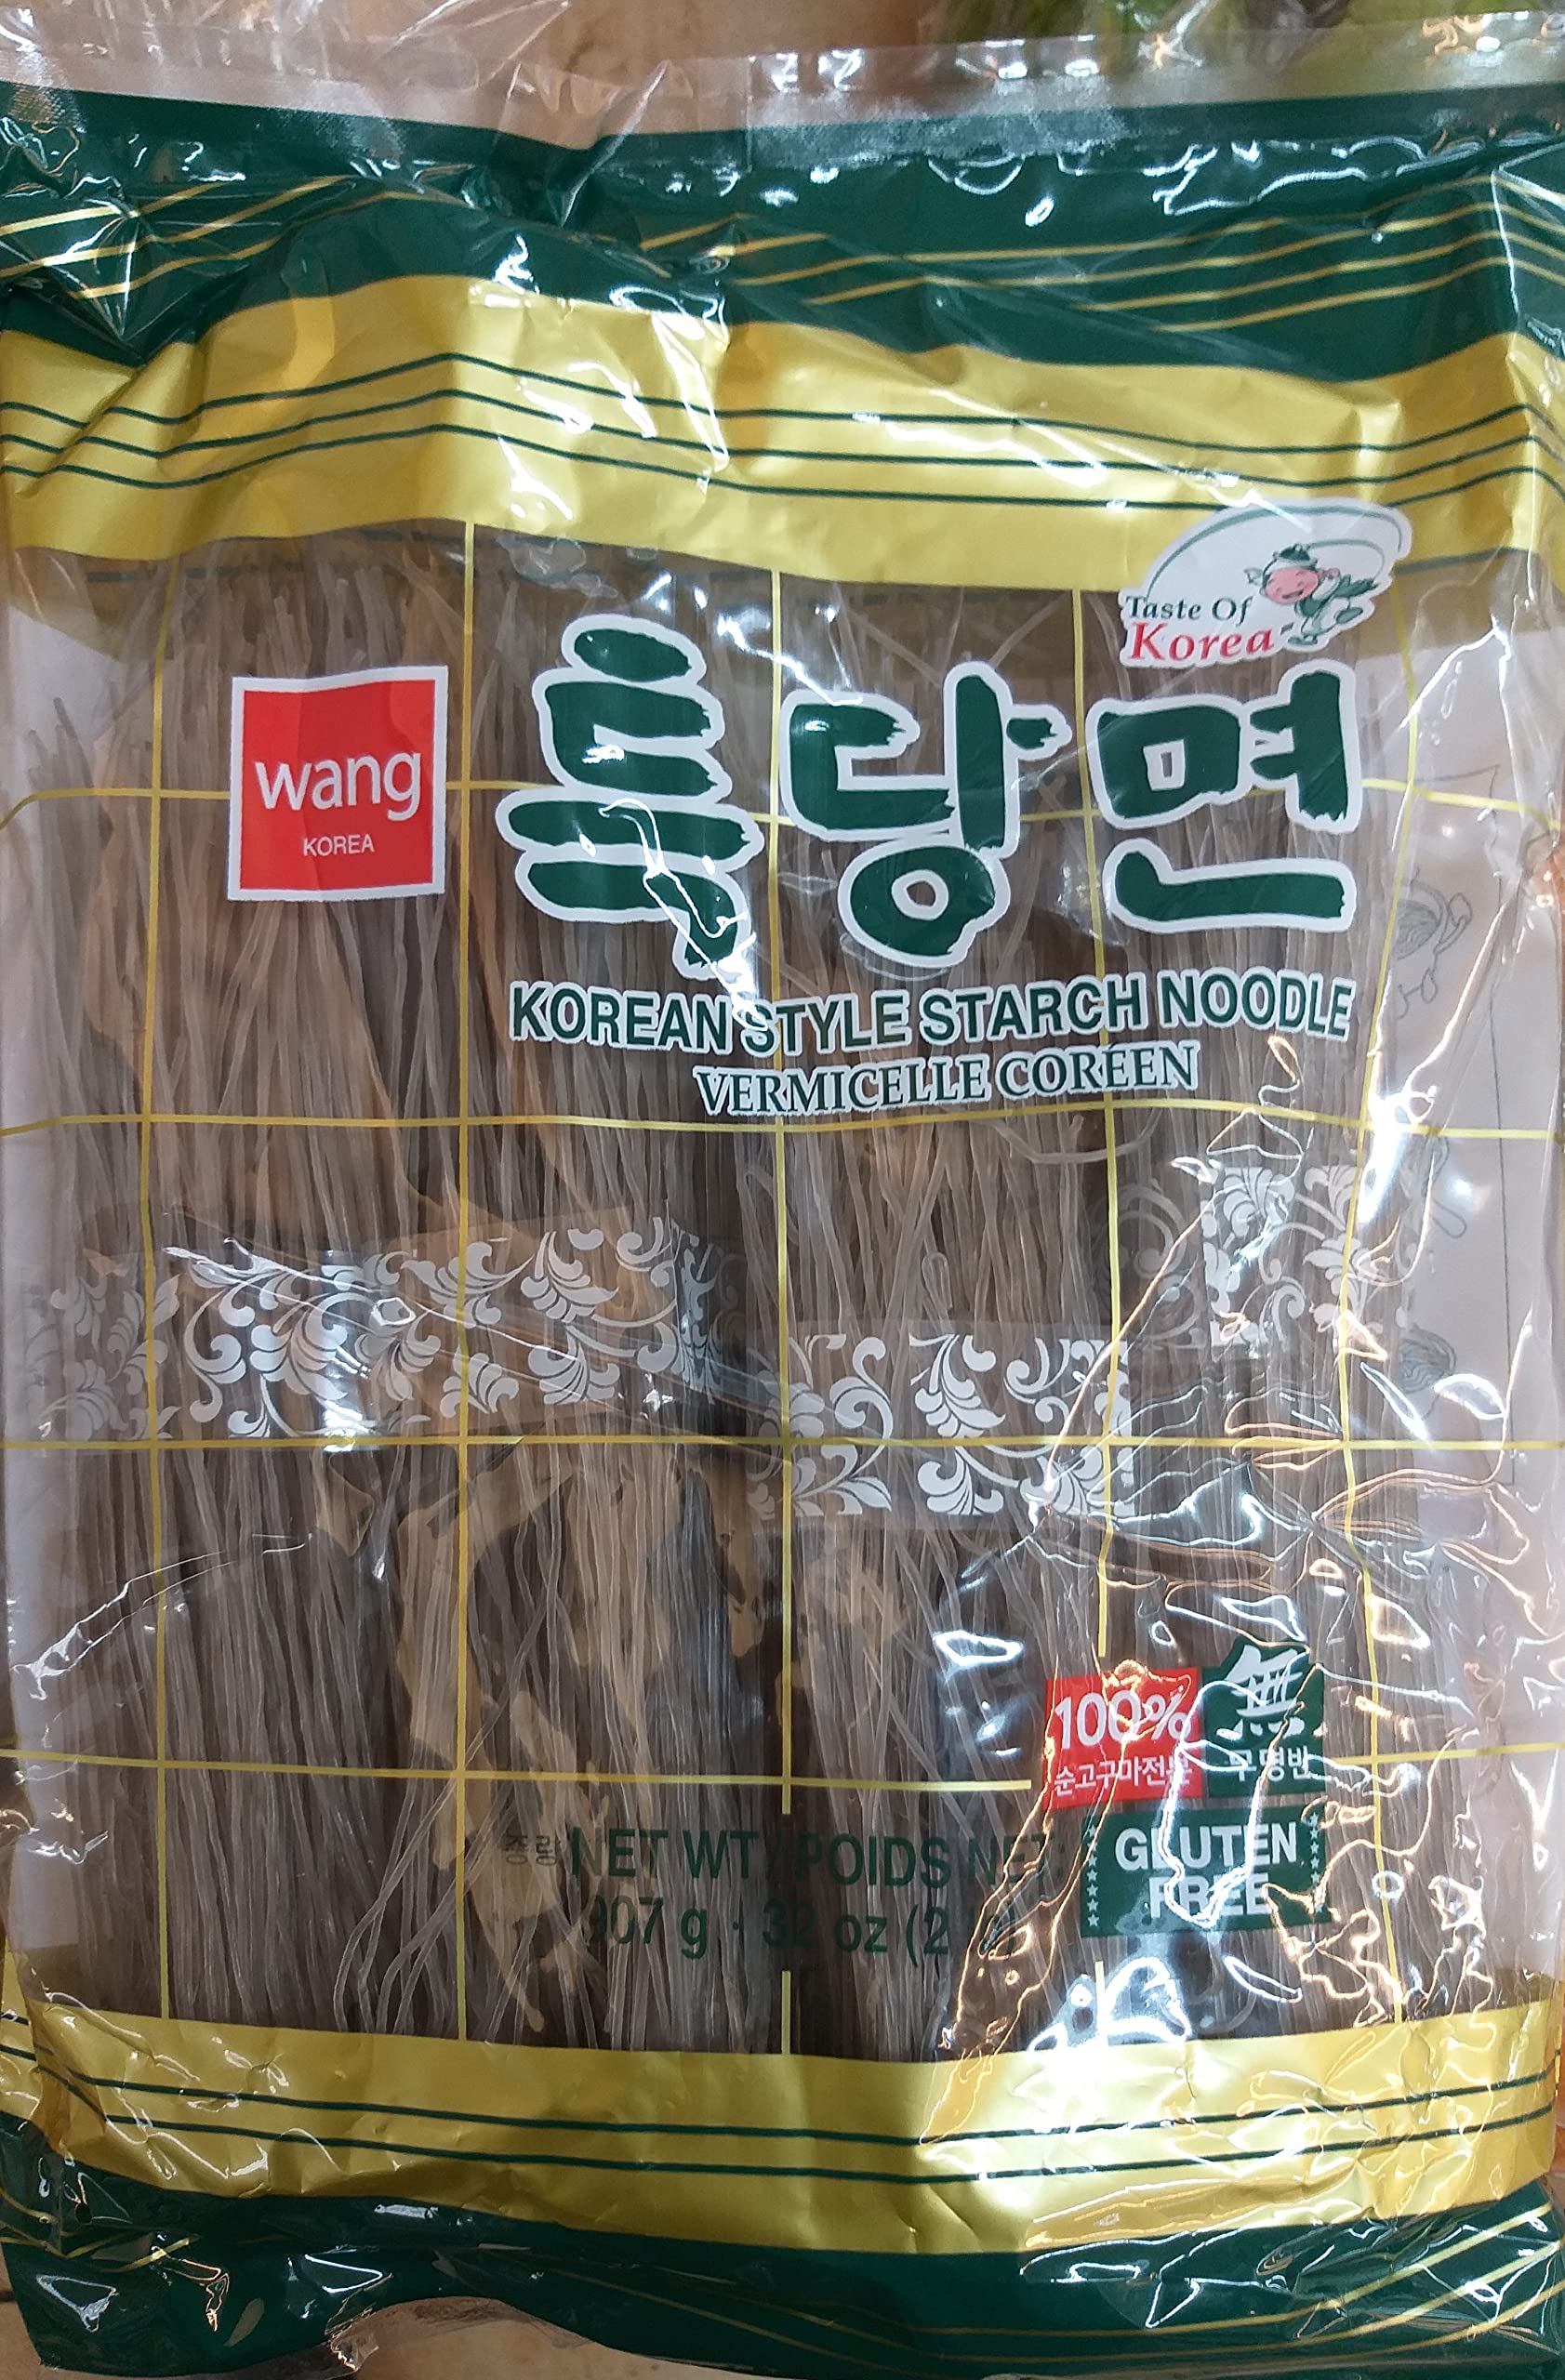 Wang, Korean Style Starch Noodle (2 lb), 32 oz